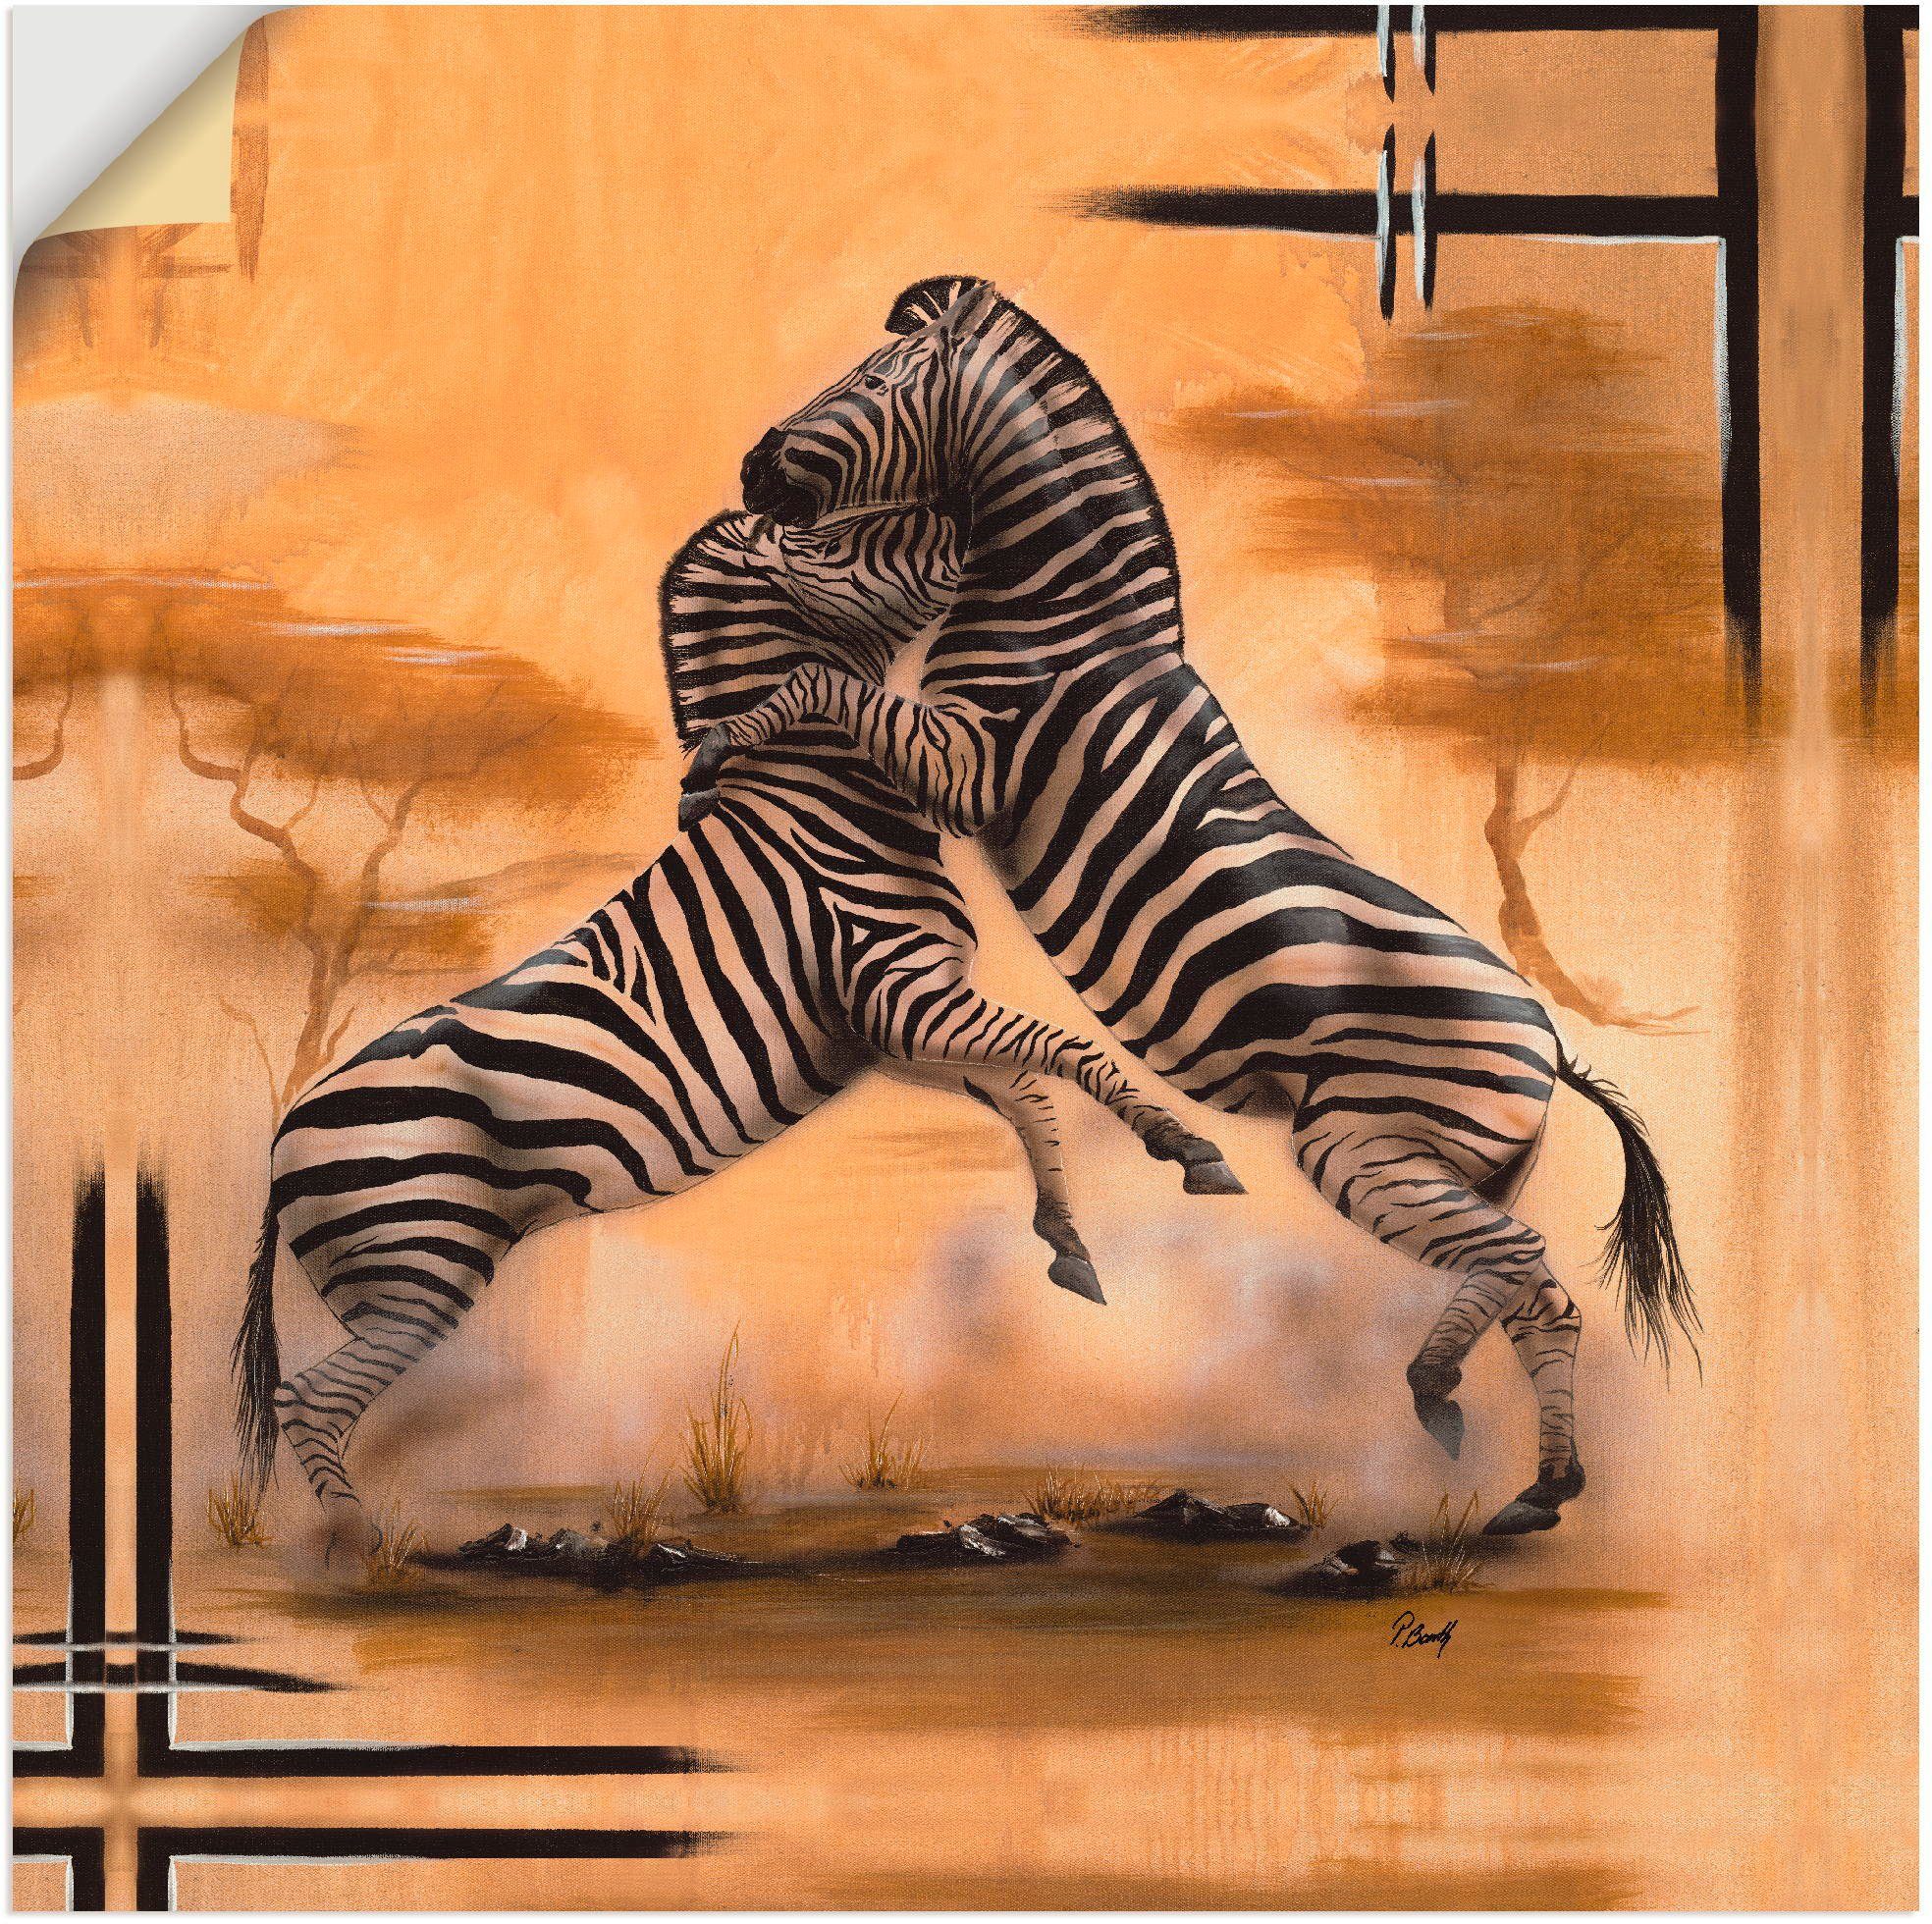 Artland Artprint Zebra-strijd in vele afmetingen & productsoorten - artprint van aluminium / artprint voor buiten, artprint op linnen, poster, muursticker / wandfolie ook geschikt